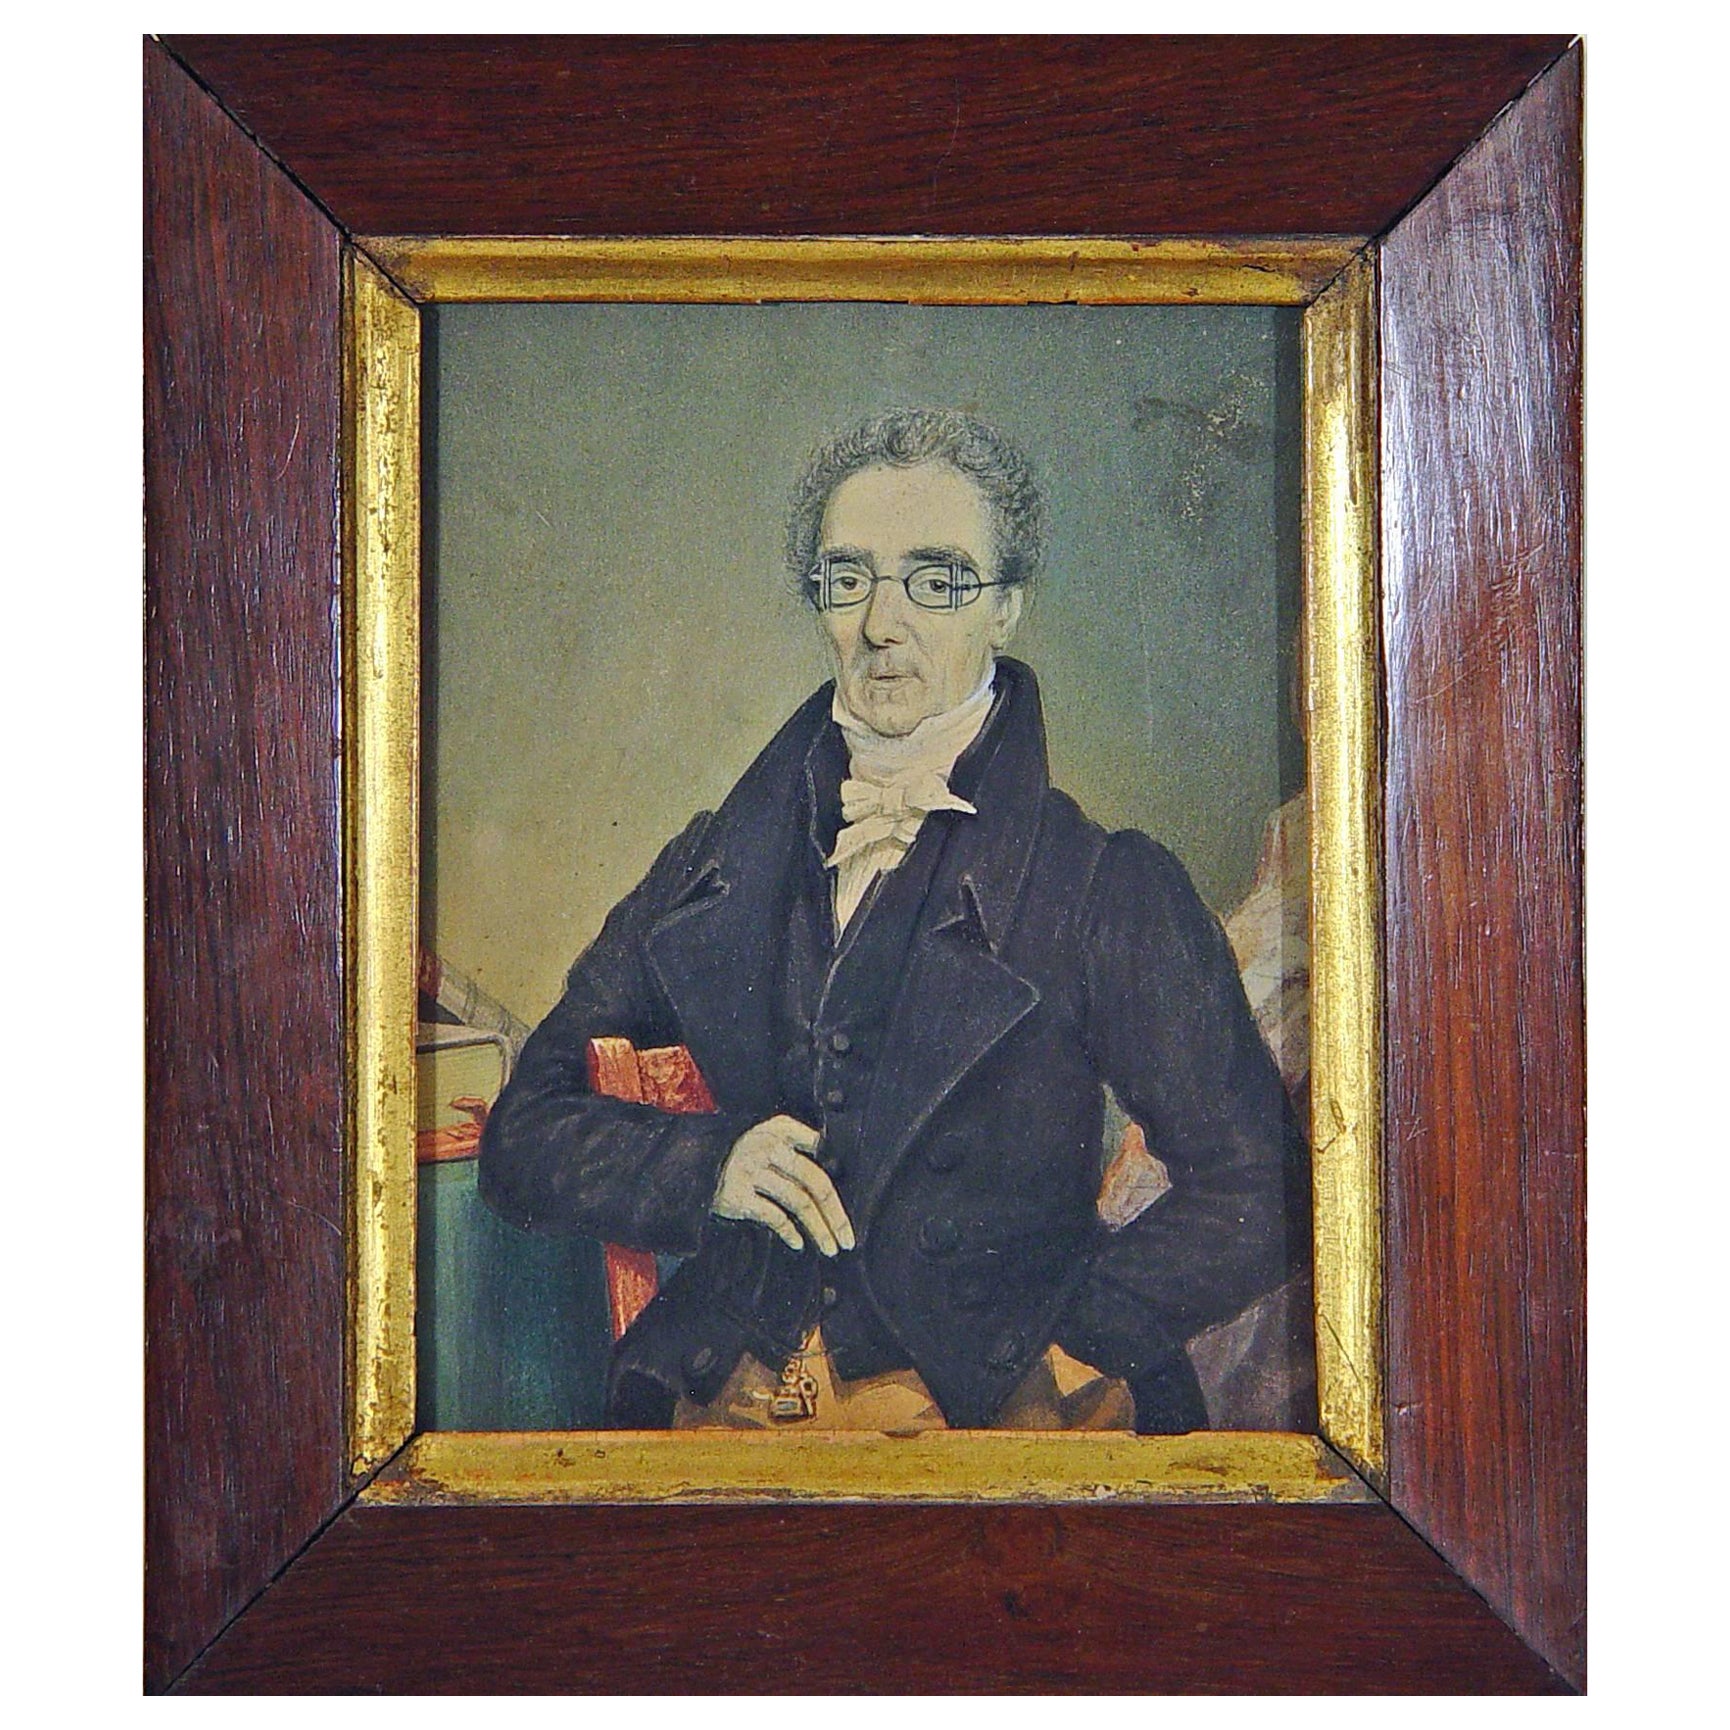 Portrait Miniature of A Gentleman Wearing Unusual Eyeglasses